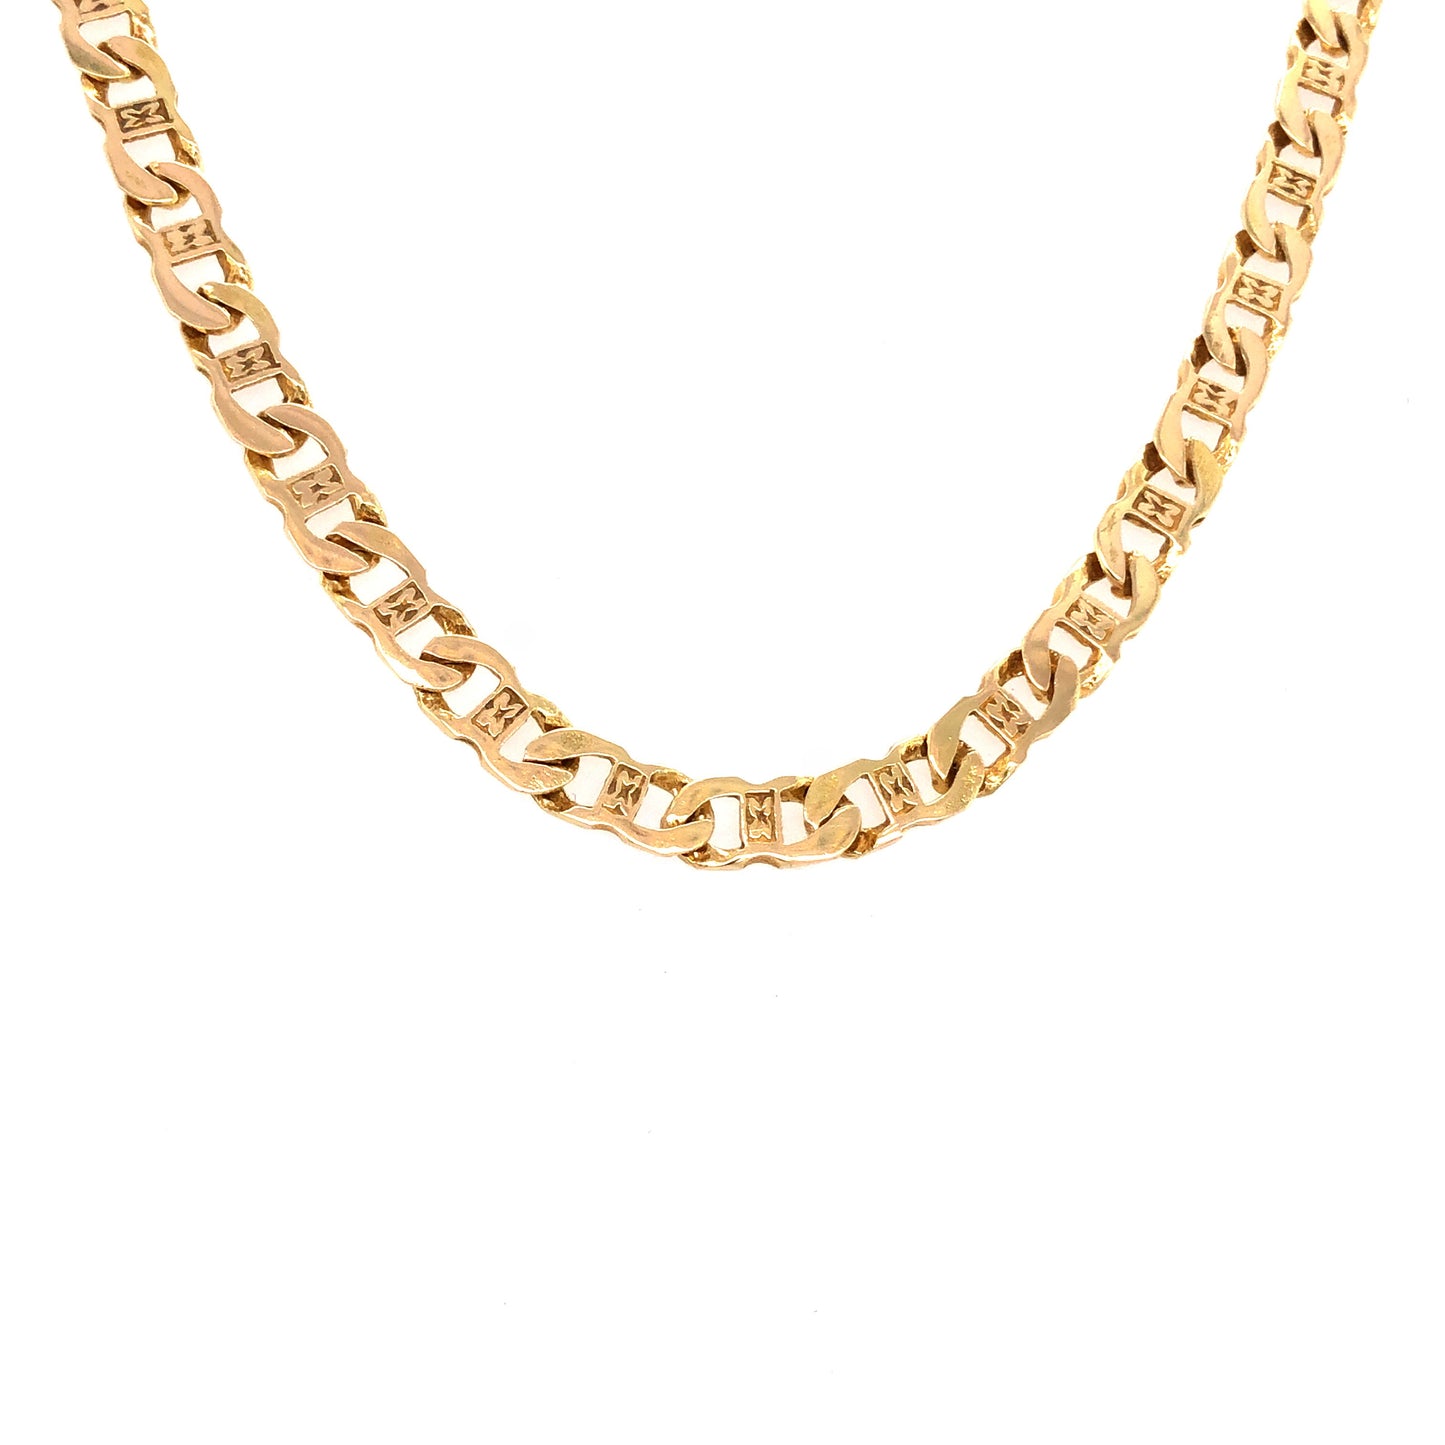 Halskette Gold 585 / 14k Stäbchen-panzerkette Goldkette